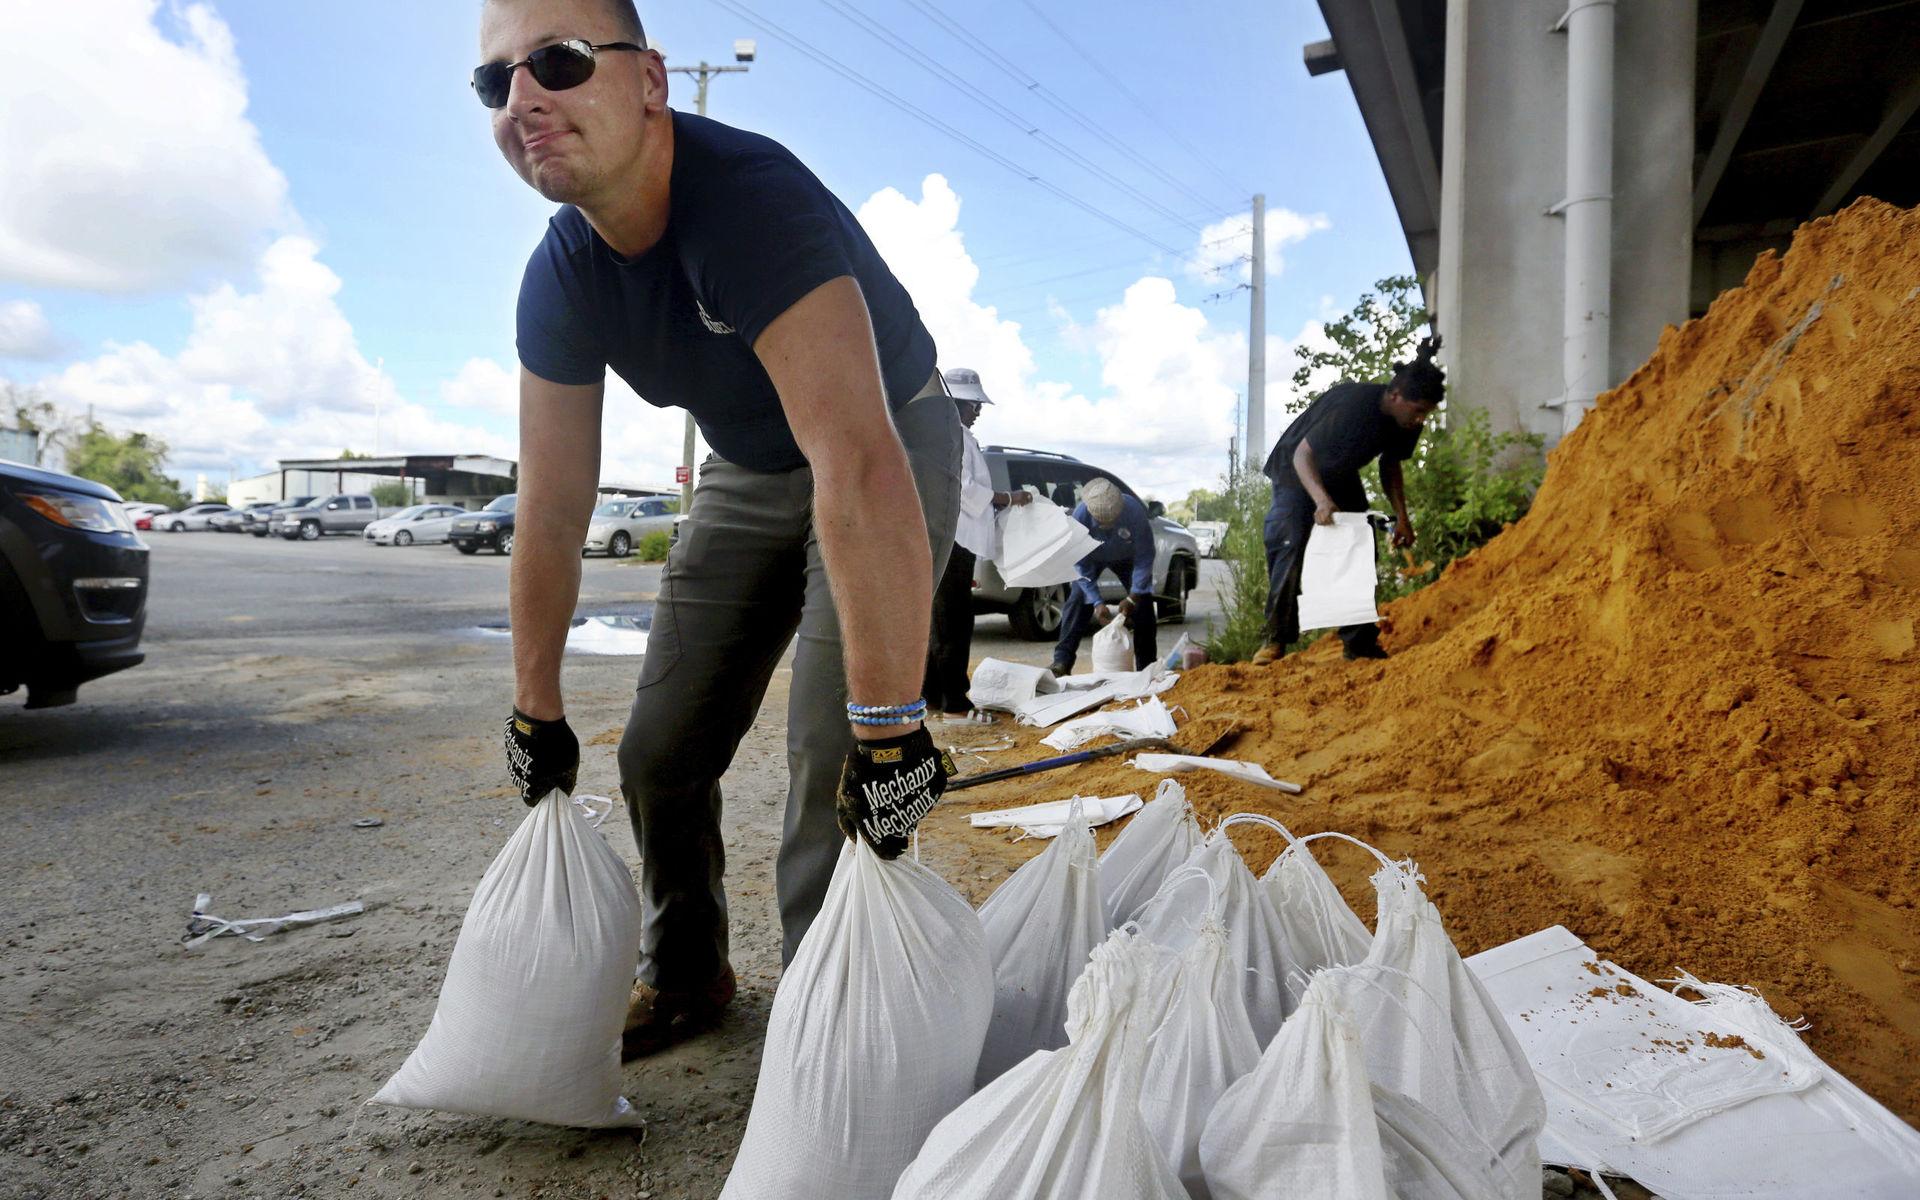  I Isle of Palms ger staden bort gratis sand för de boende att fylla i påsar för att skydda sig mot höga vattenflöden.